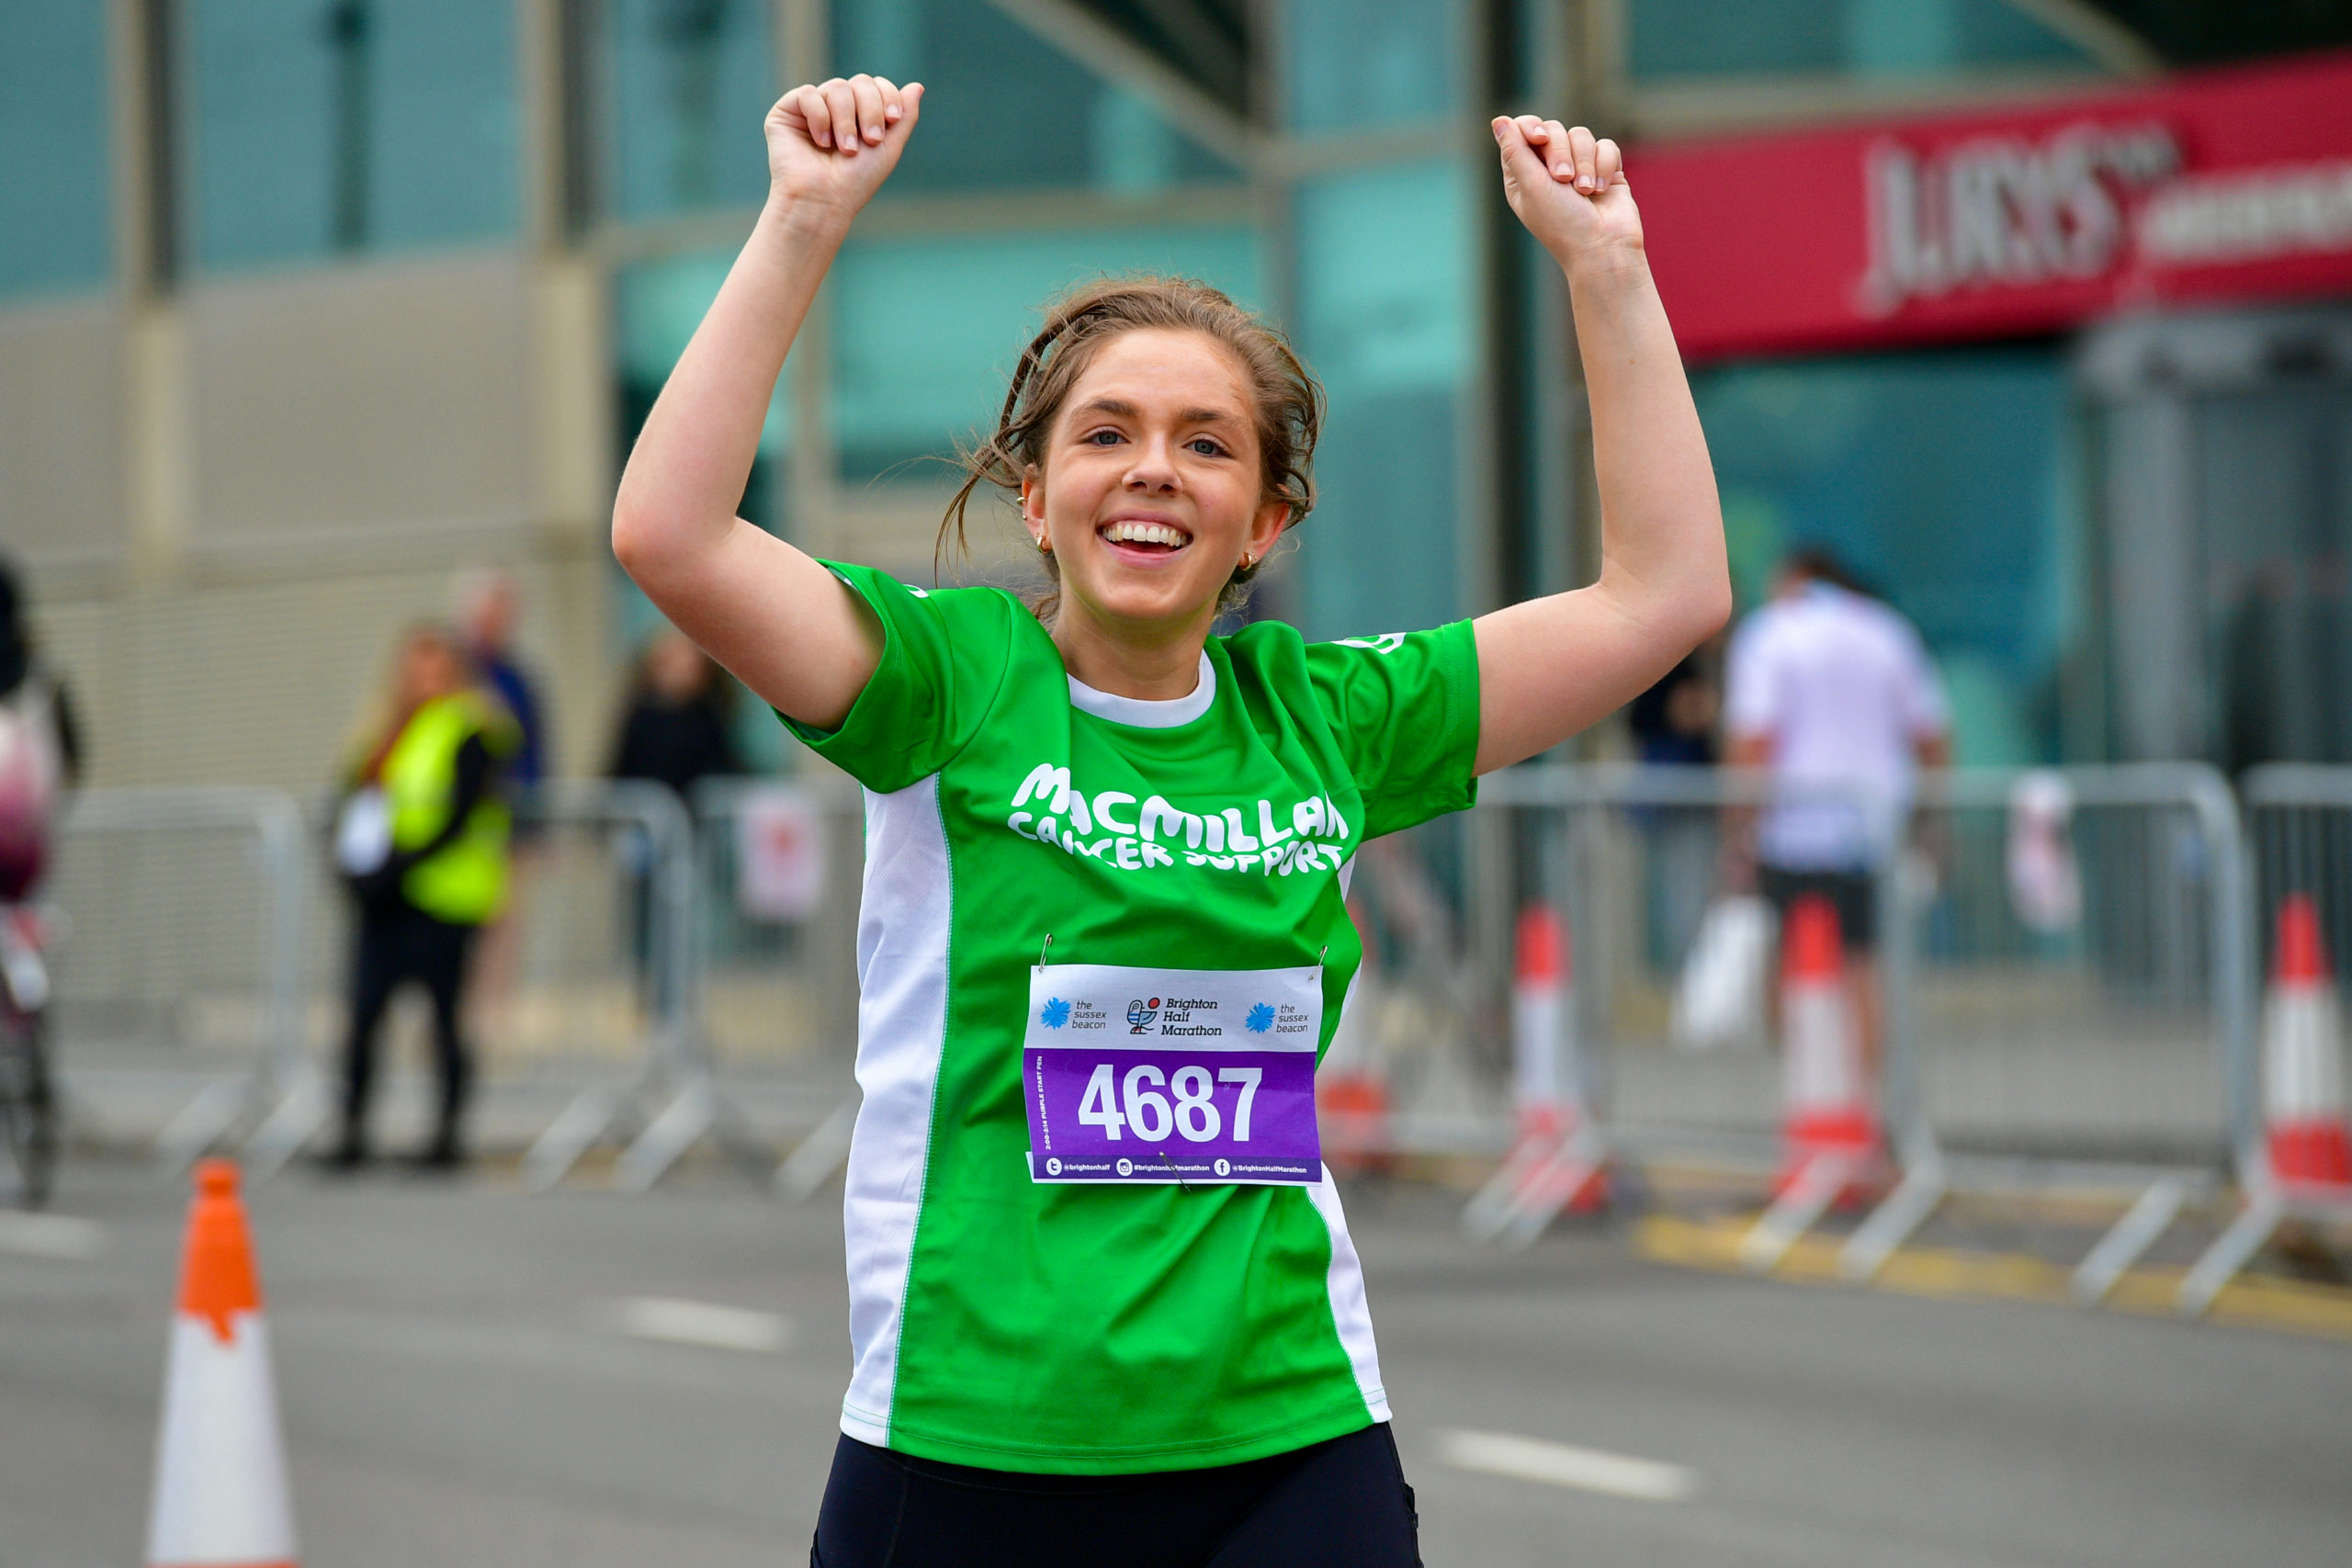 A Macmillan runner